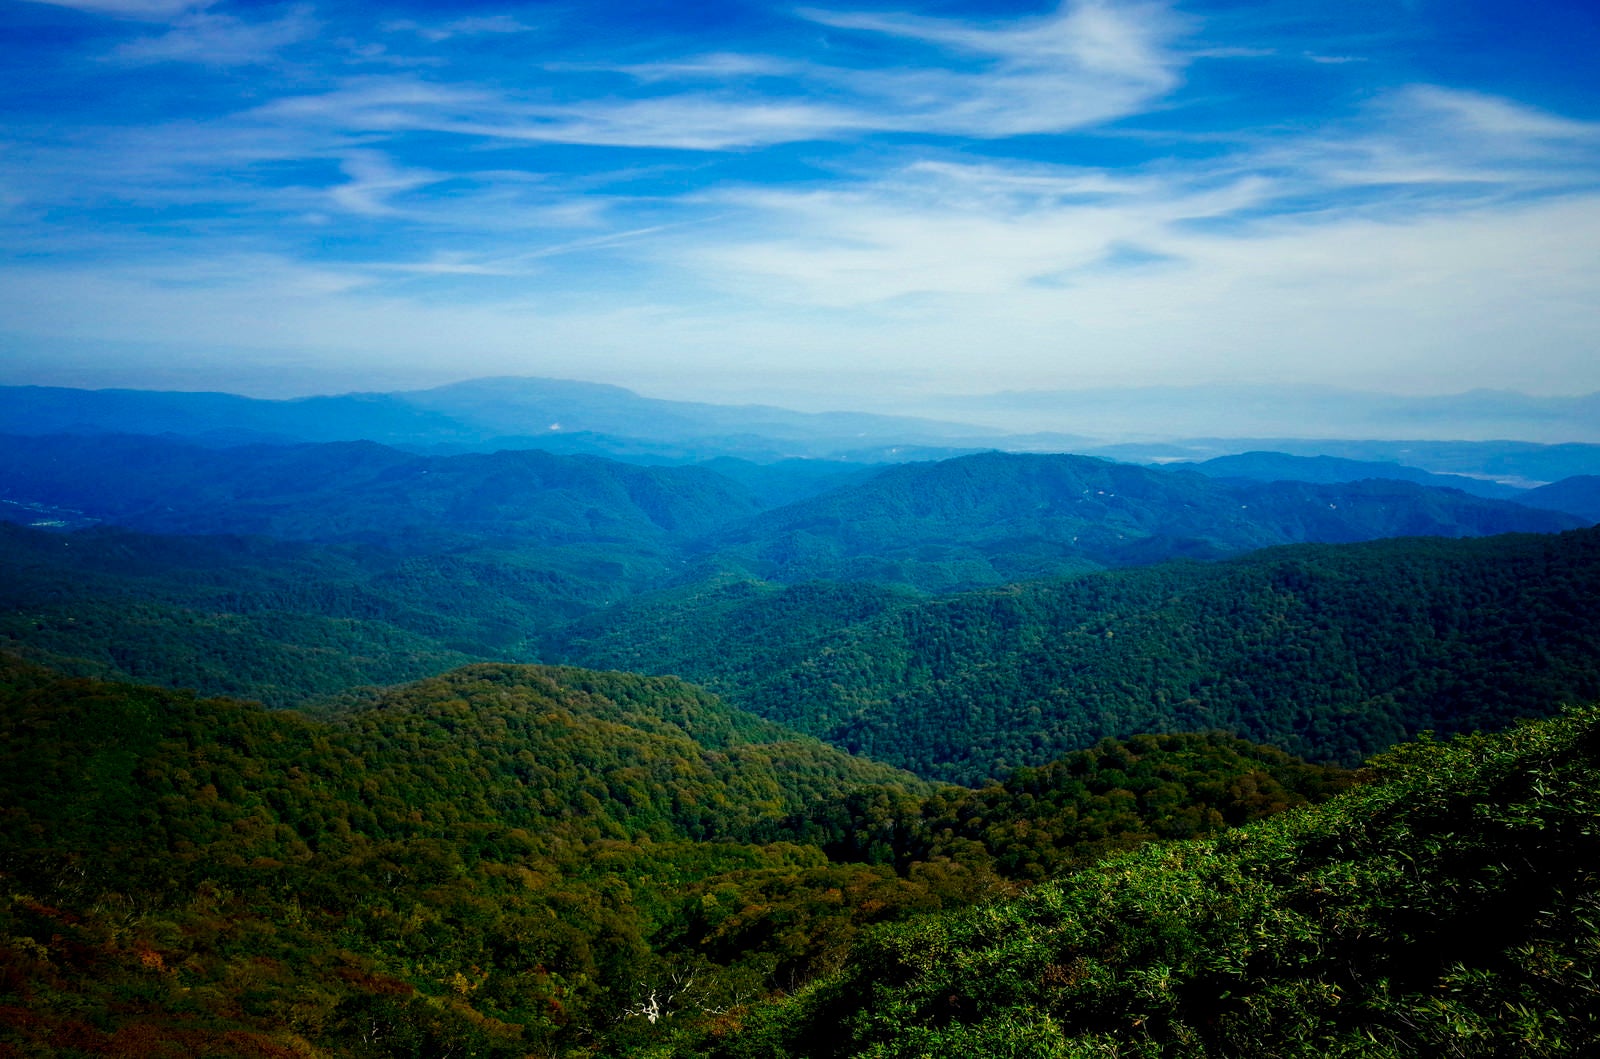 「大朝日岳稜線から見る葉山と奥羽山脈方面」の写真